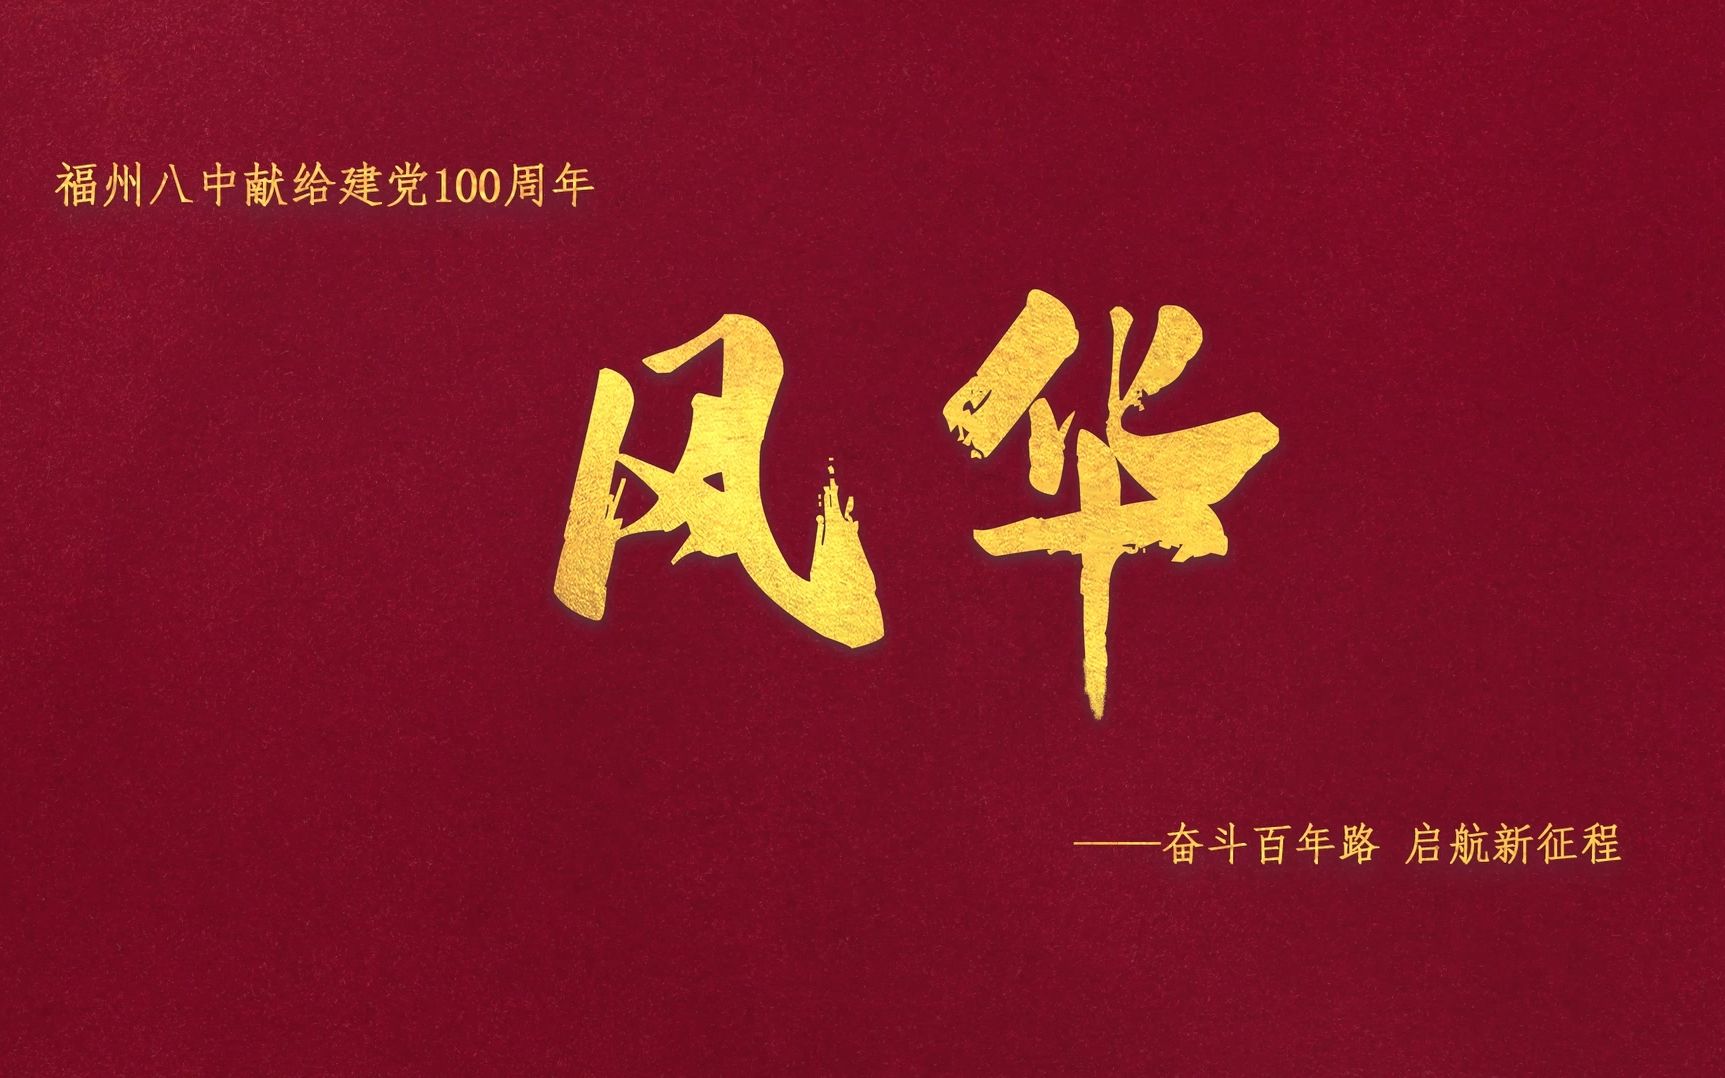 【建党百年】《风华》— 福州八中献给建党100周